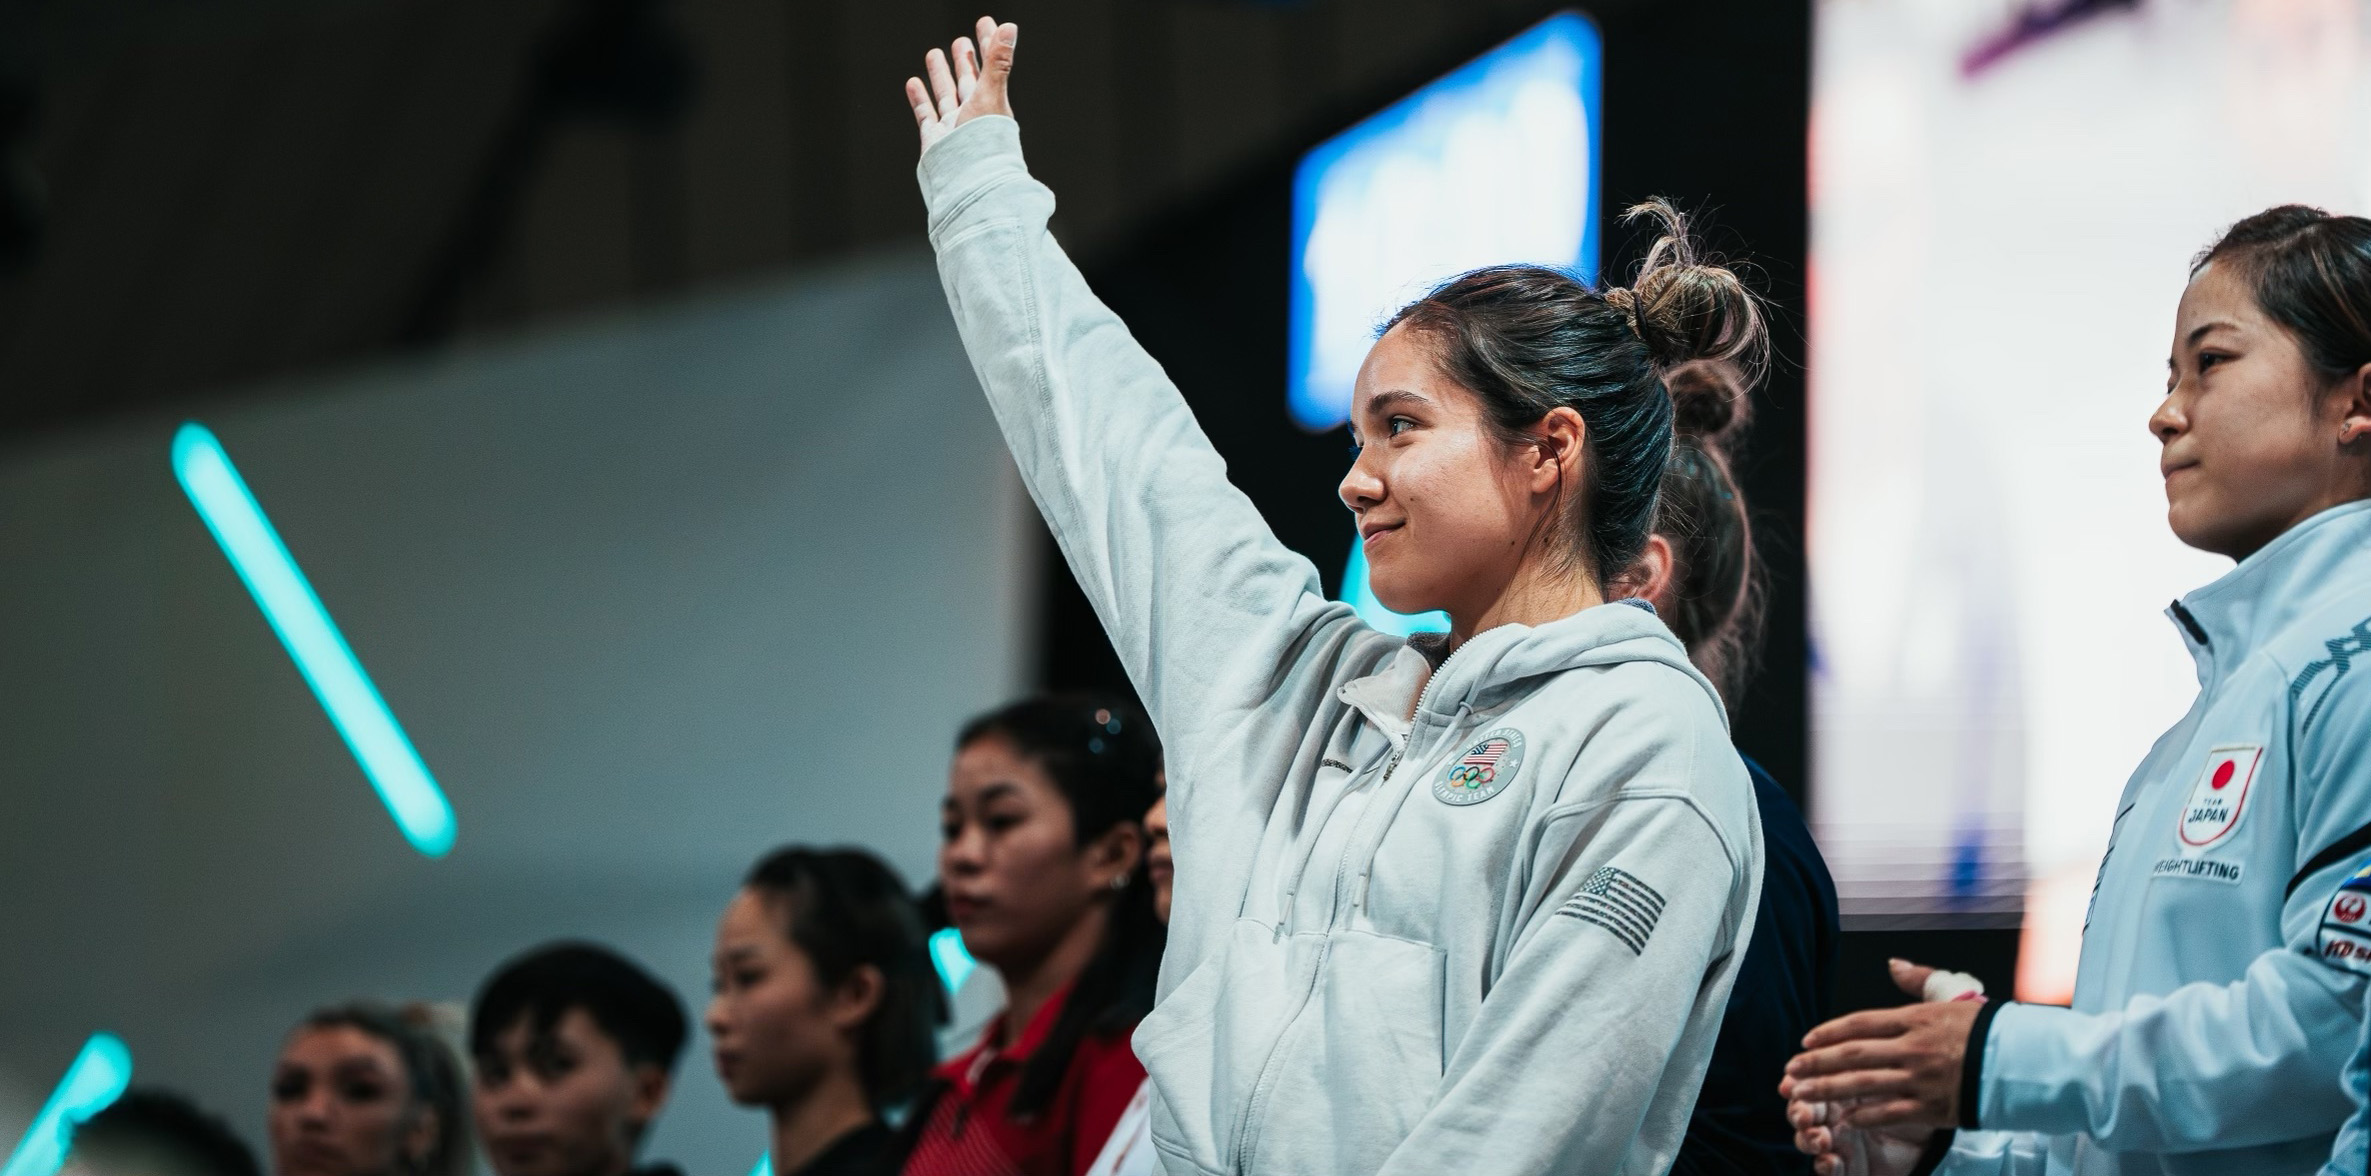 Jourdan Delacruz standing with her arm up waving